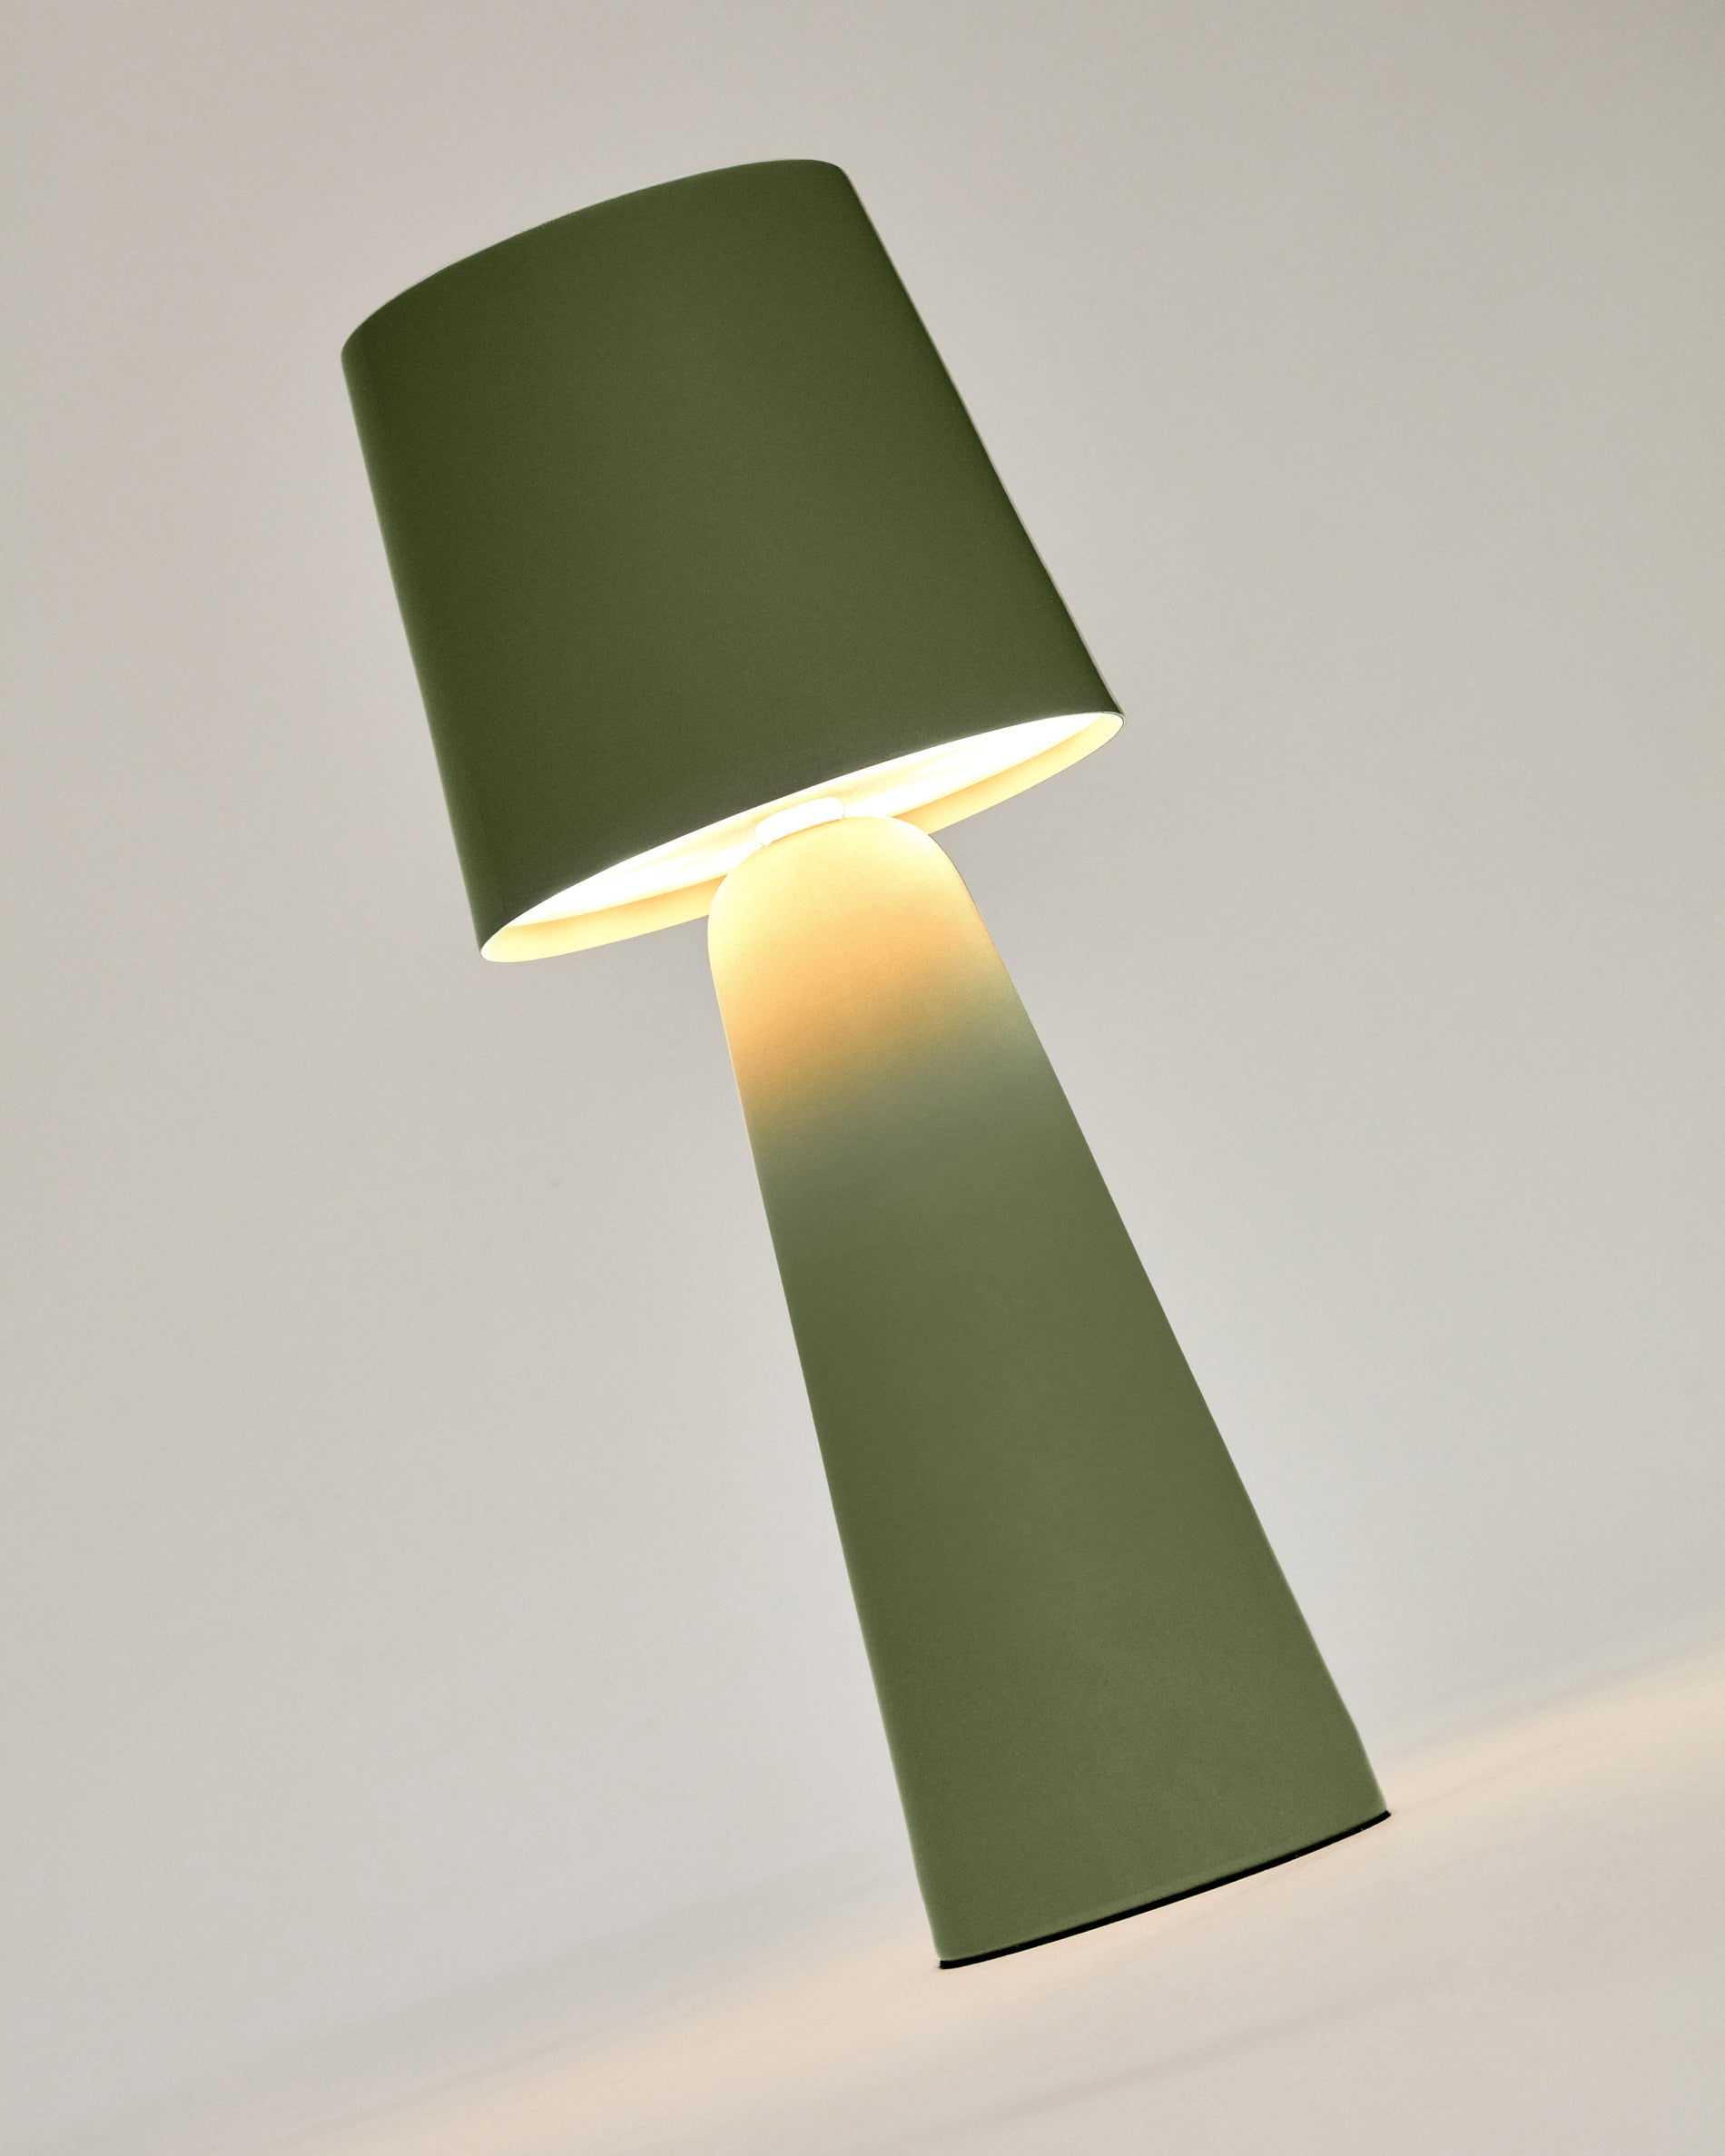 Arenys kis kültéri fém asztali lámpa zöld festett befejezéssel